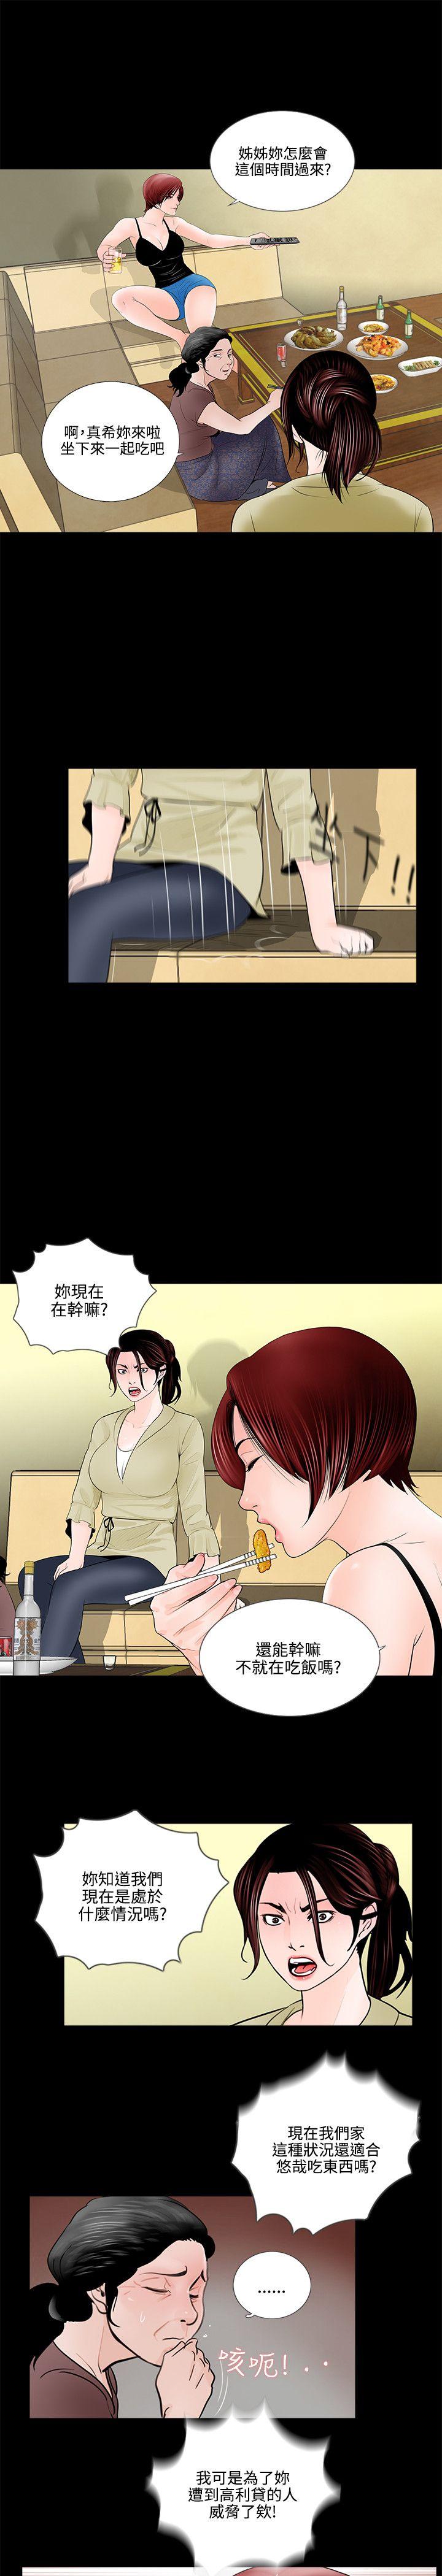 韩国污漫画 夢魘 第1话 23